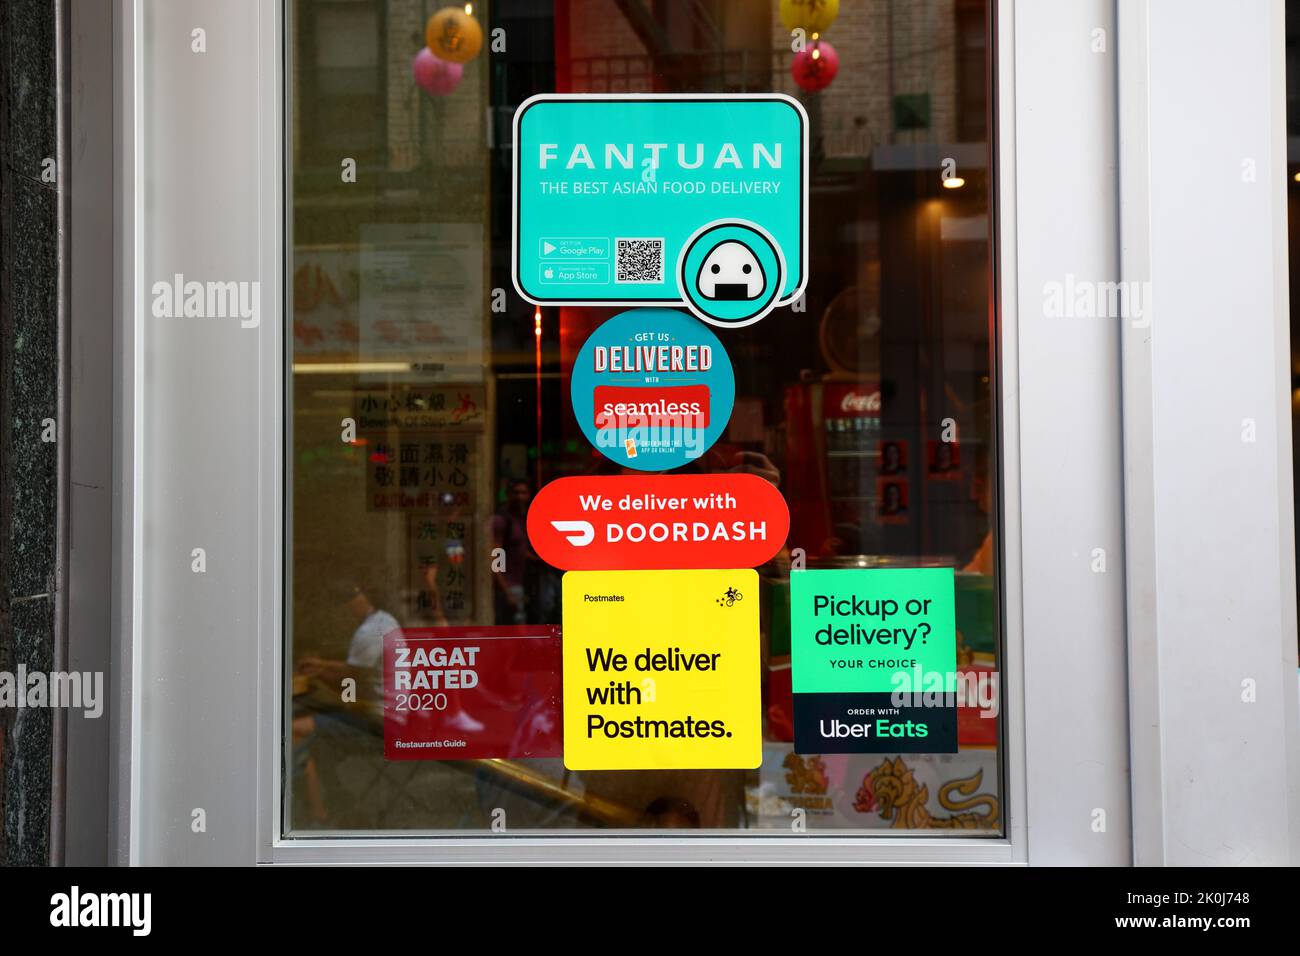 Fantuan Delivery, Seamless, Doordash, Postmates und Uber frisst App-Aufkleber für den Lieferservice auf einer Tür zu einem Restaurant in Chinatown, New York. Stockfoto